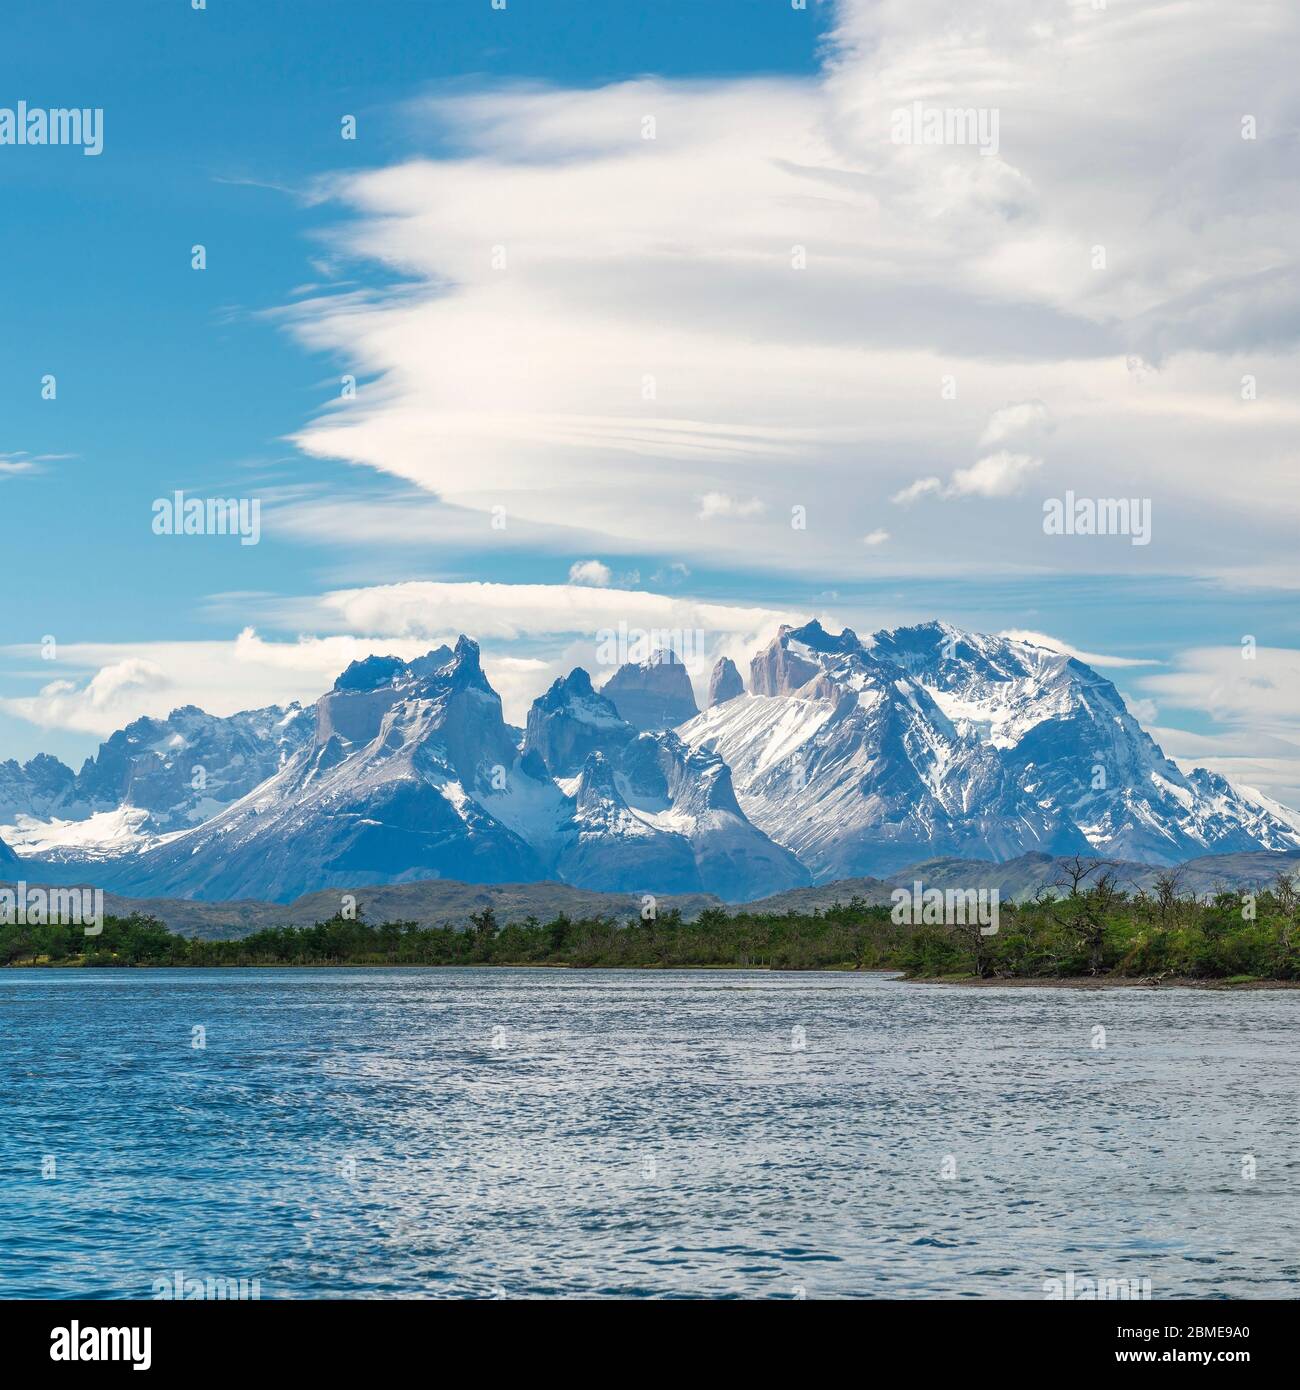 Les sommets de Torres et Cuernos del Paine vus de la rivière Serrano avec des nuages circulaires, parc national de Torres del Paine, Patagonie, Chili. Banque D'Images